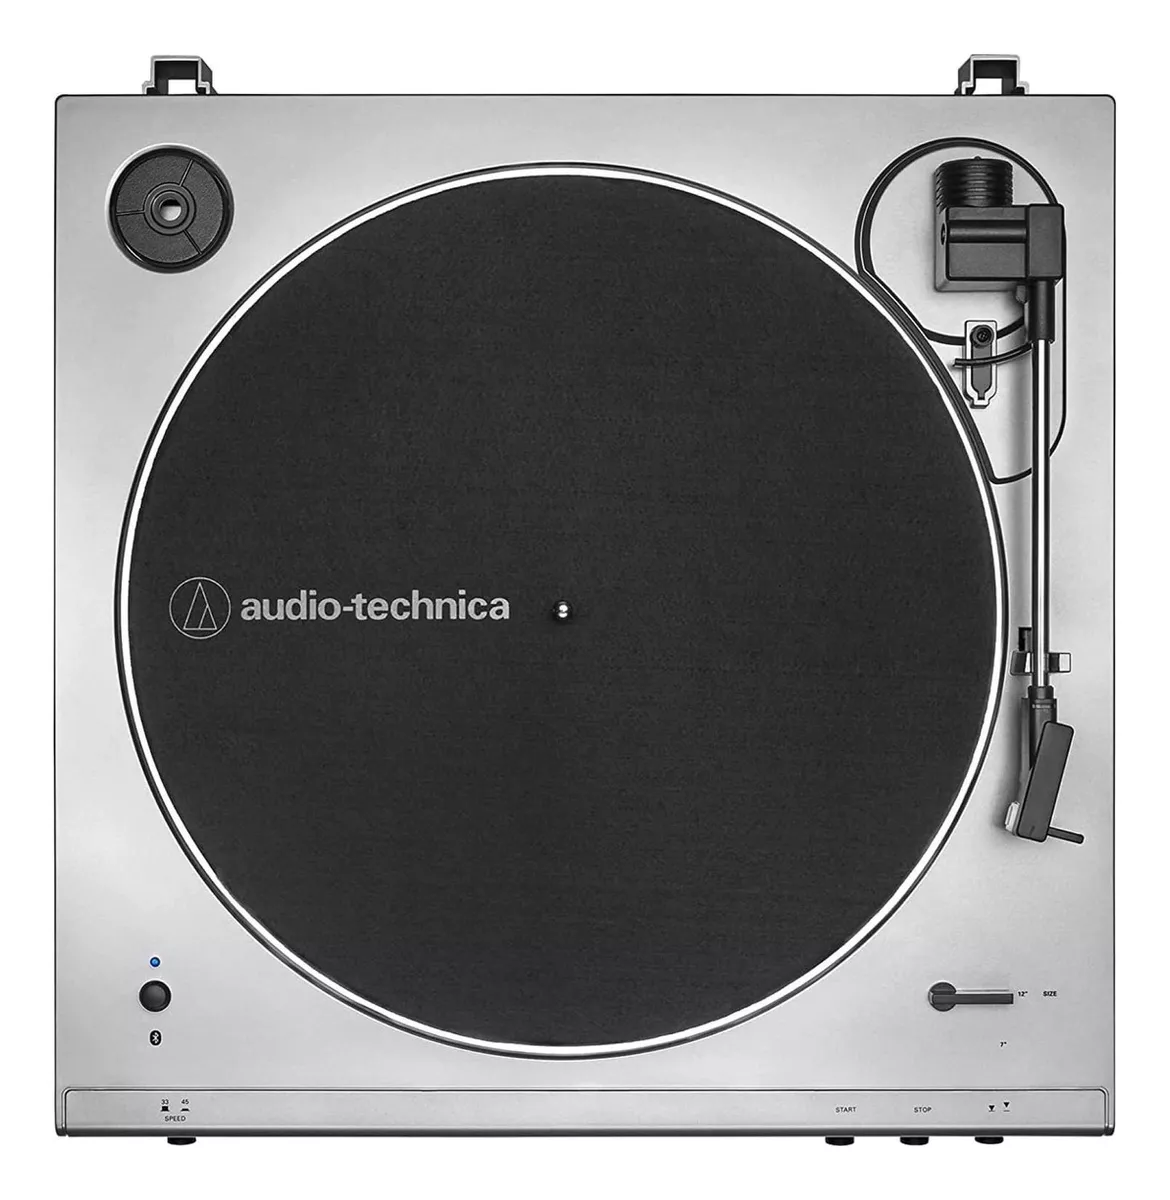 Primeira imagem para pesquisa de toca disco audio technica